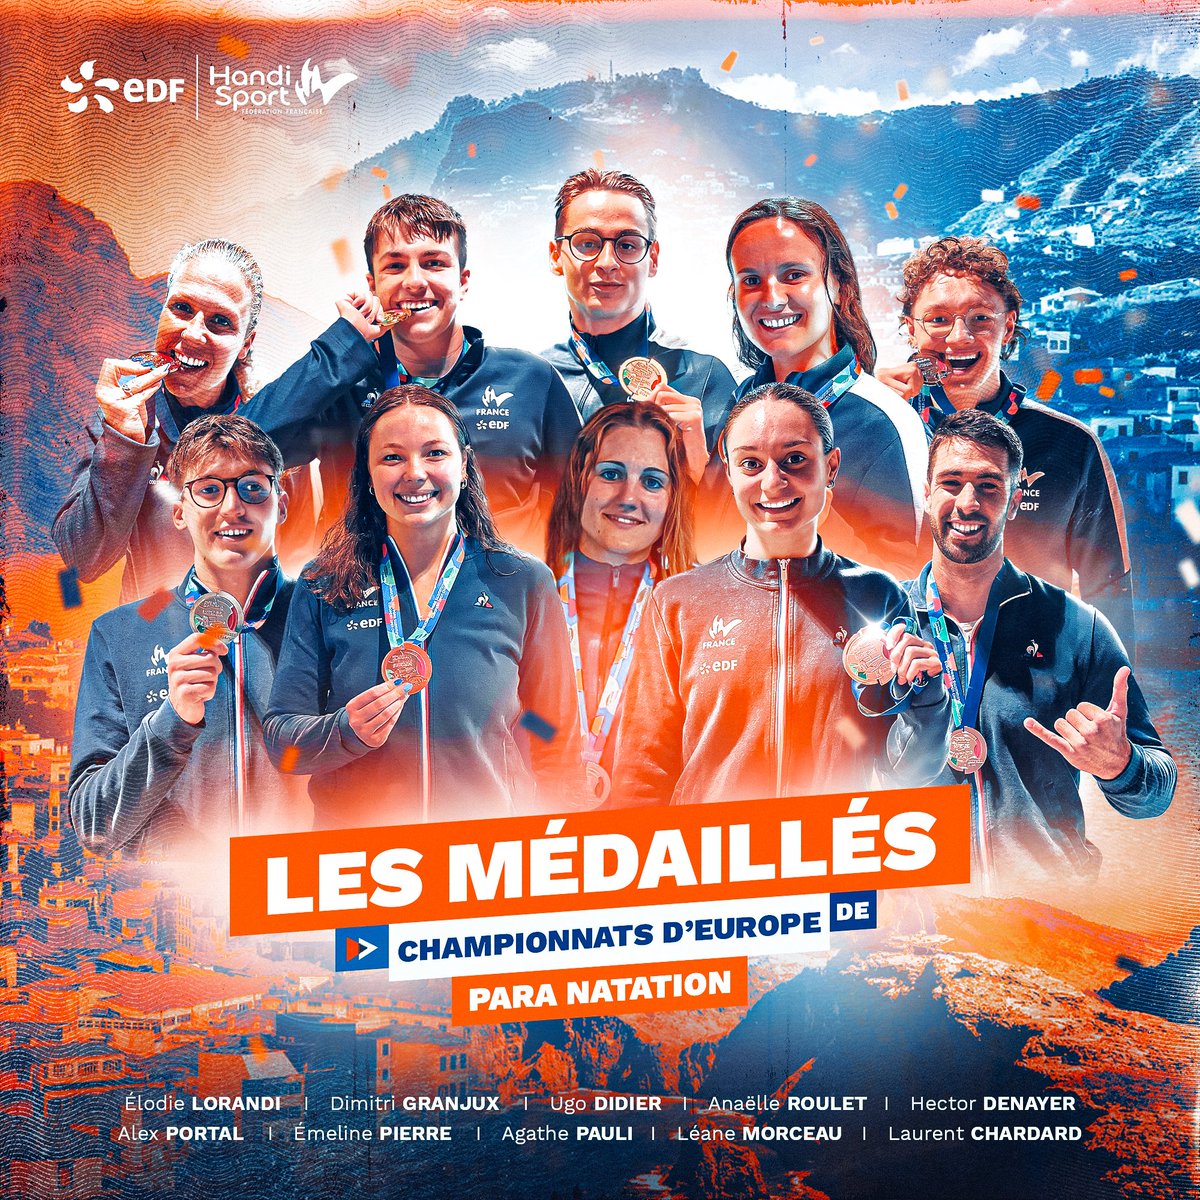 𝑪𝒂𝒓𝒕𝒐𝒏 𝒑𝒍𝒆𝒊𝒏 🥇🥈🥉 Une véritable razzia pour nos para nageurs français lors des Championnats d’Europe de para natation à Madère 🏊 Un total de 22 médailles 🔥 Un max de ⚡⚡⚡ en commentaire pour les féliciter ! #EnergieduSport #DLDOct